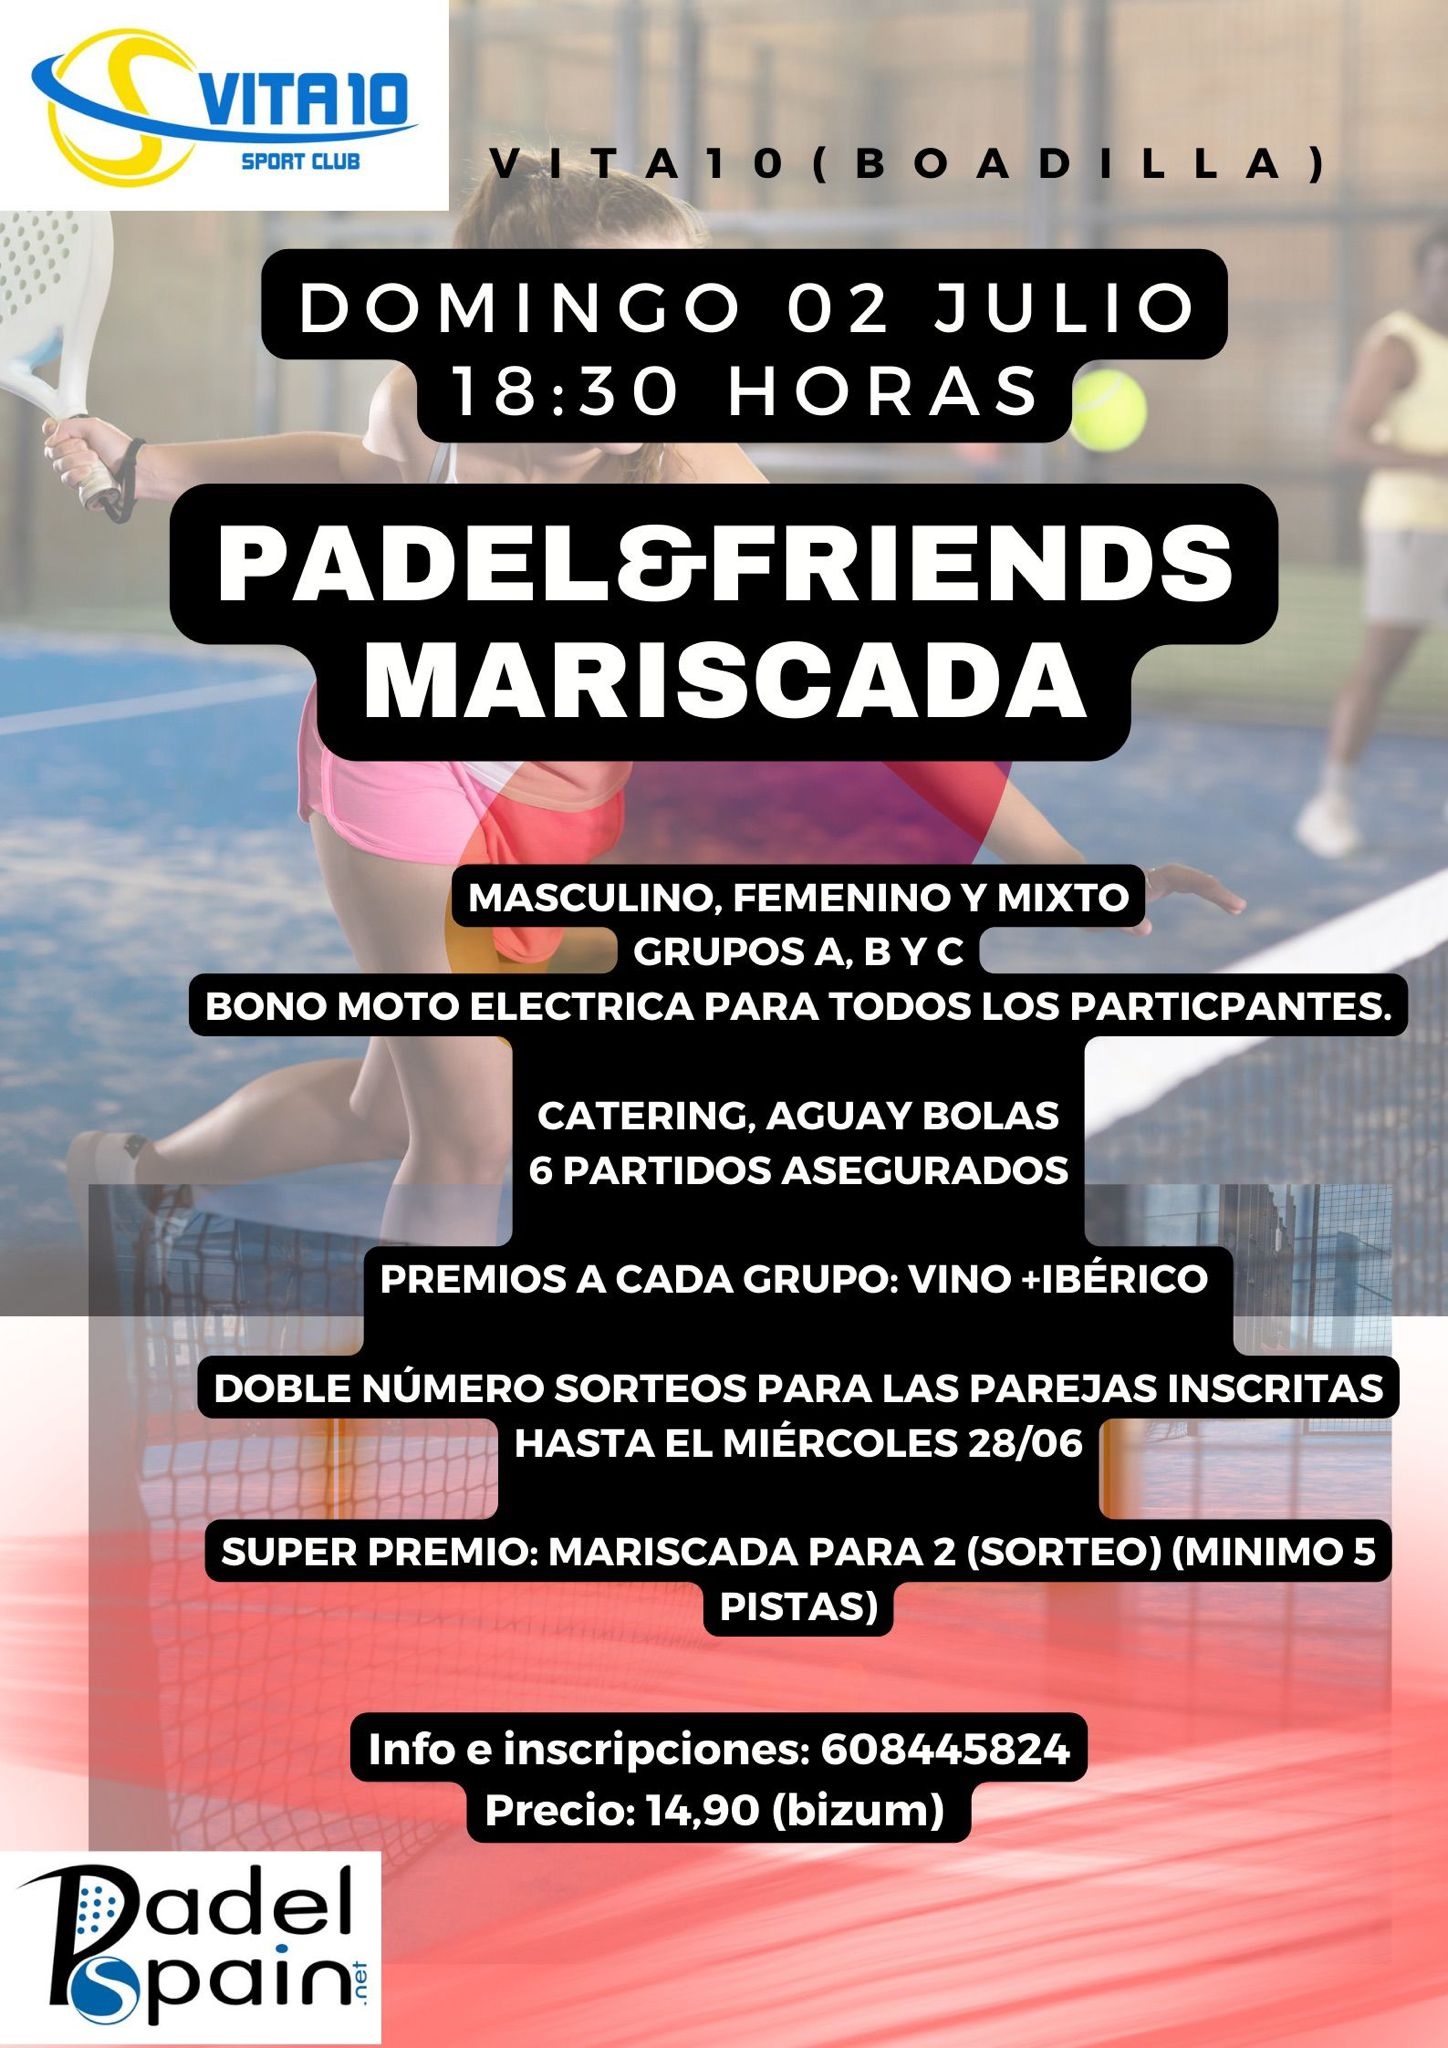 Torneo padel and friends vita 10 boadilla